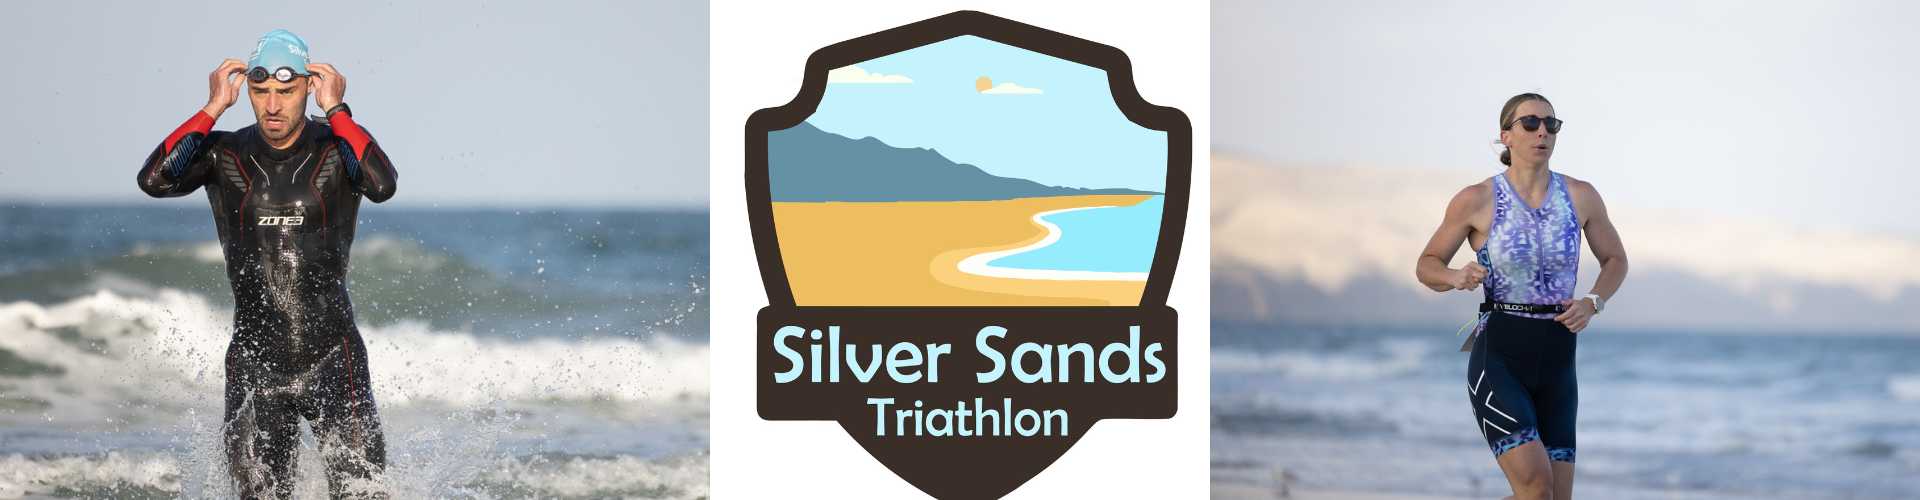 Silver Sands Triathlon